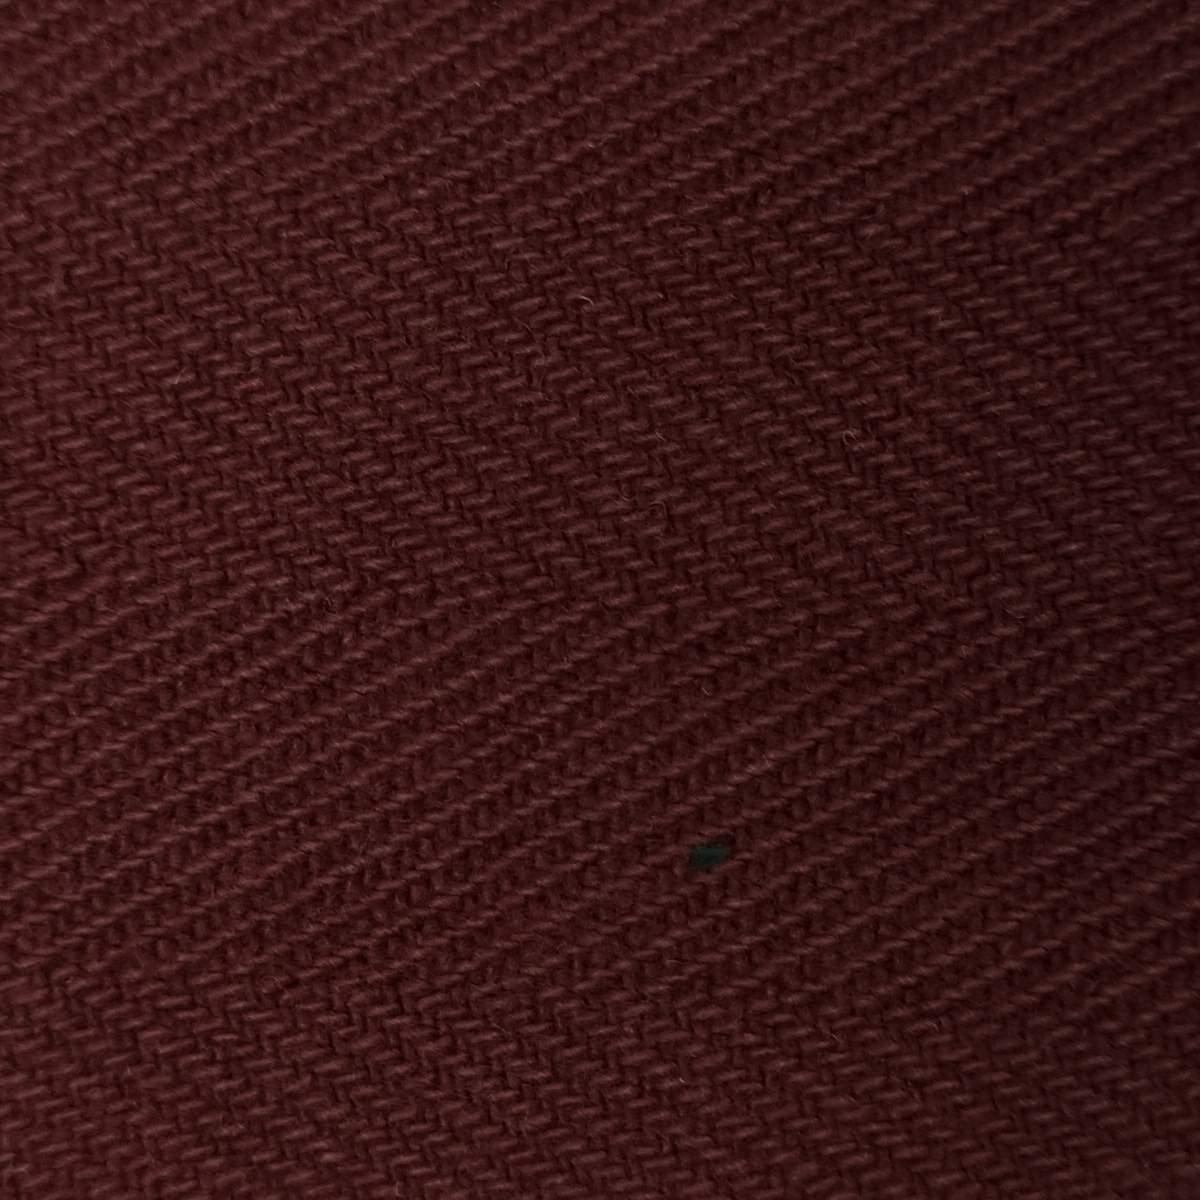 5'S Herringbone Cotton Woven Fabric-Red Devil